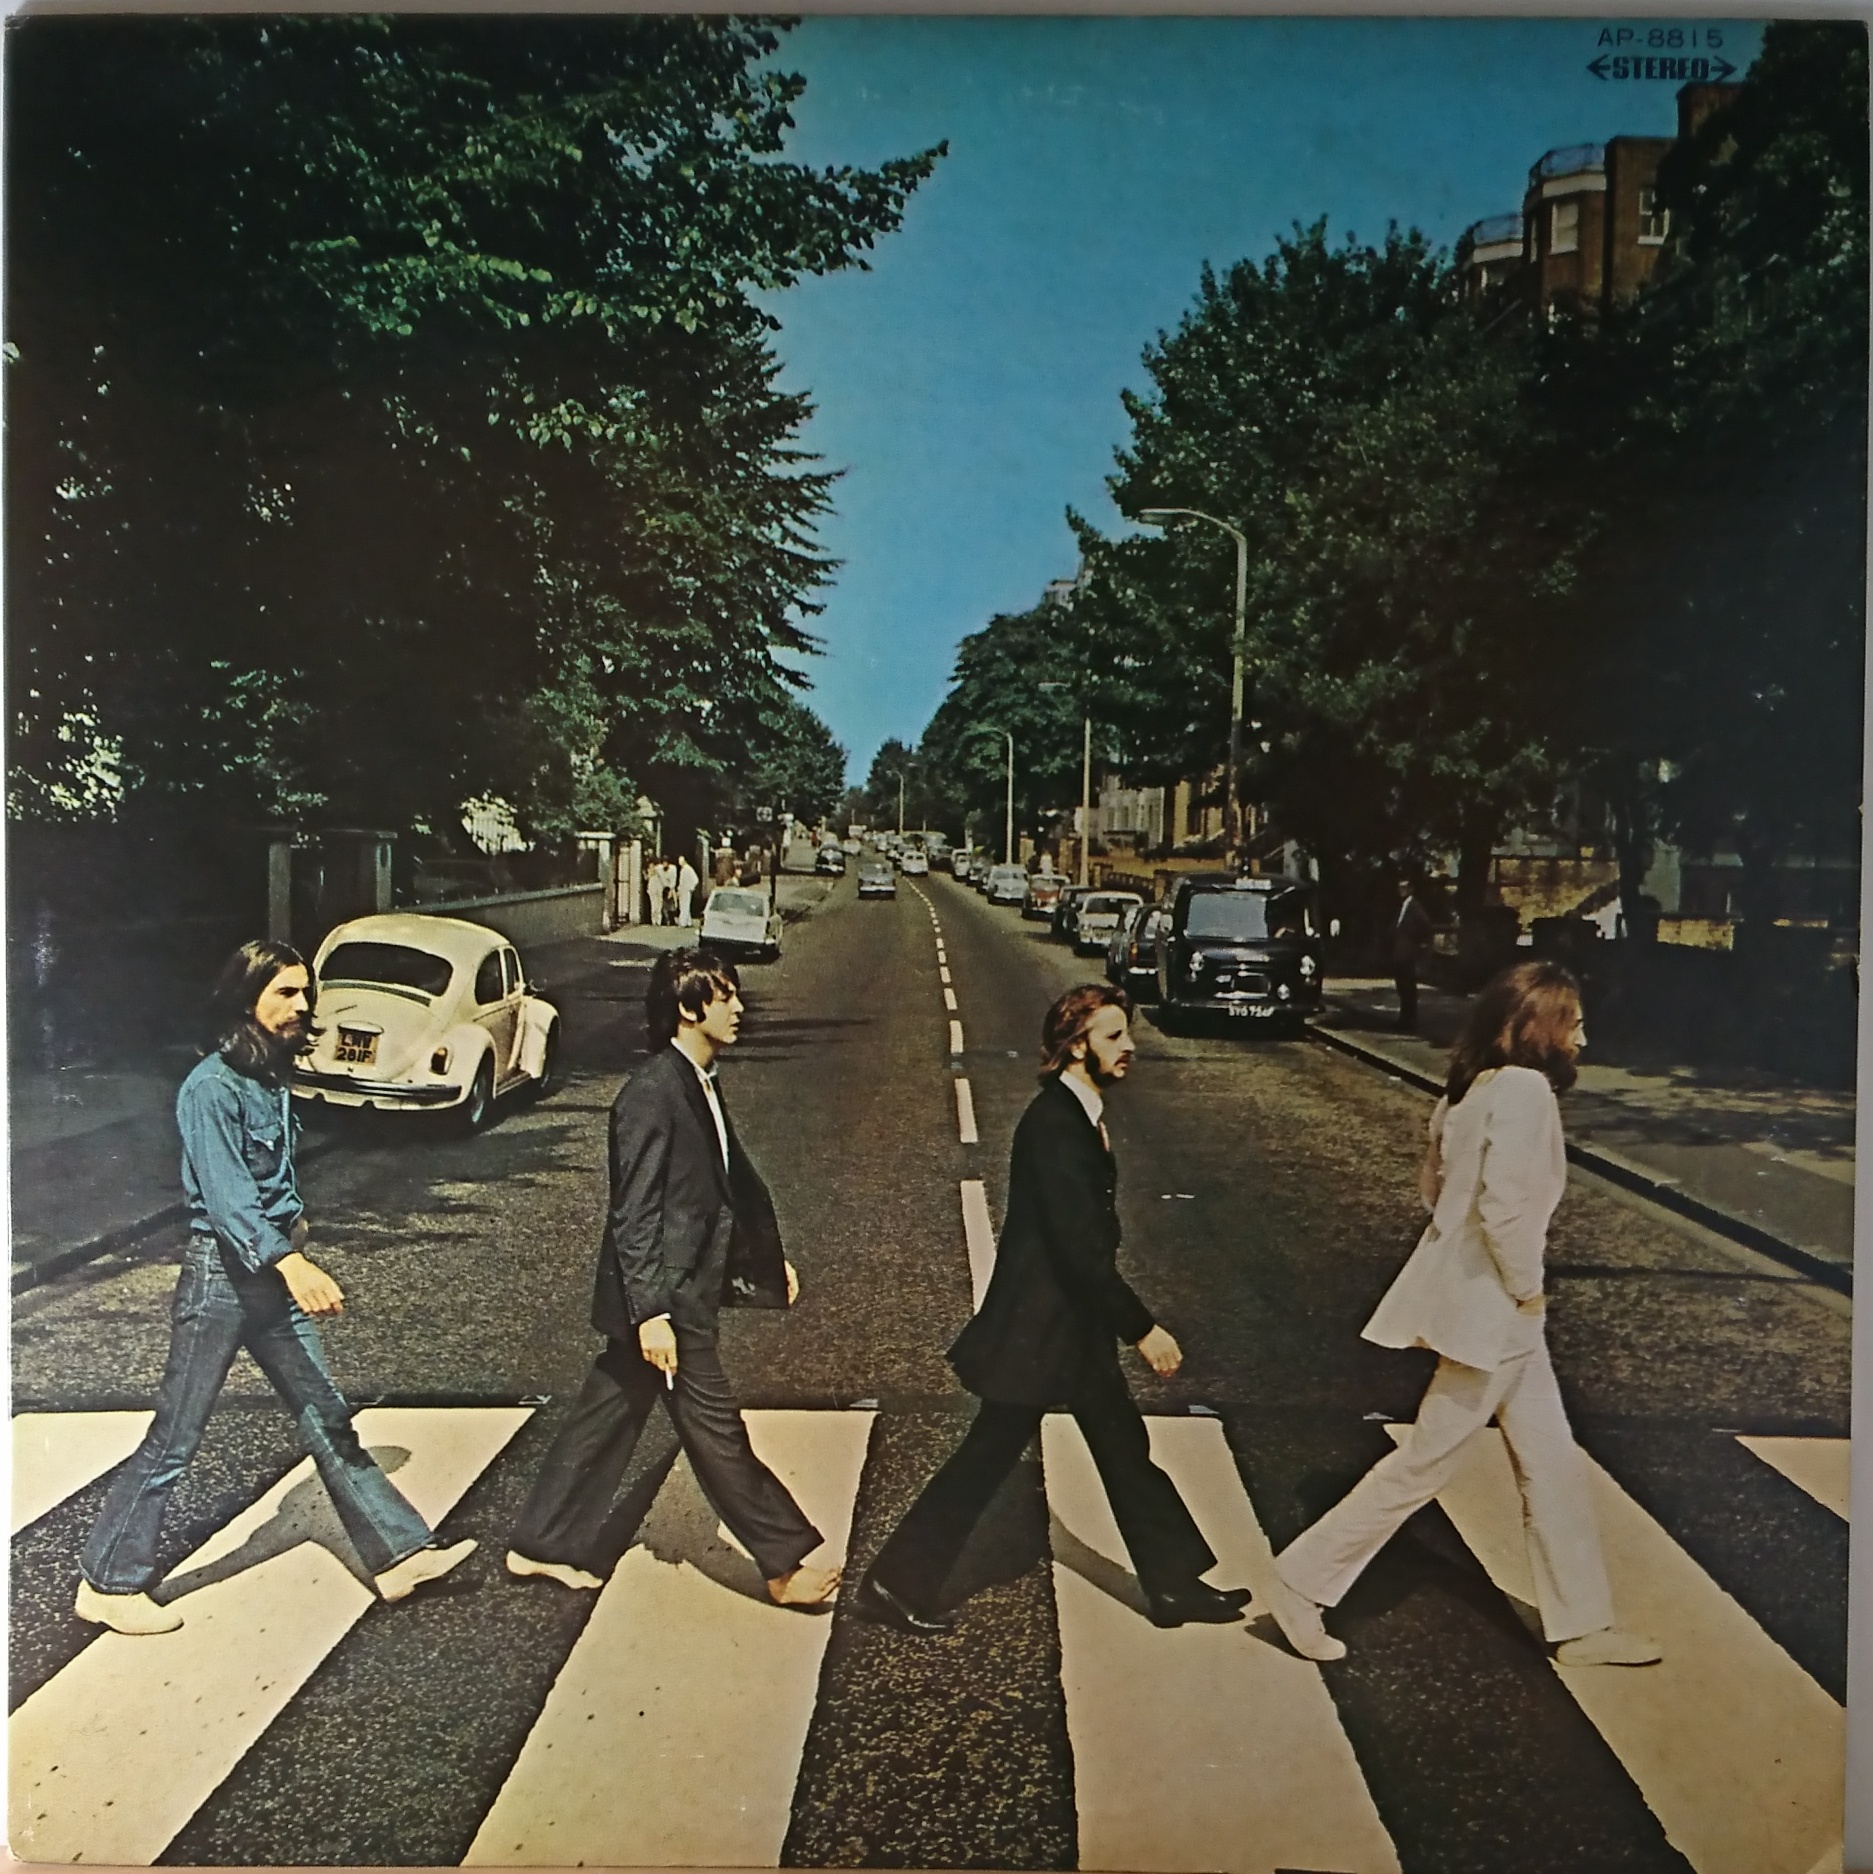 The Beatles ‎– Abbey Road | 中古レコード通販・買取のアカル・レコーズ